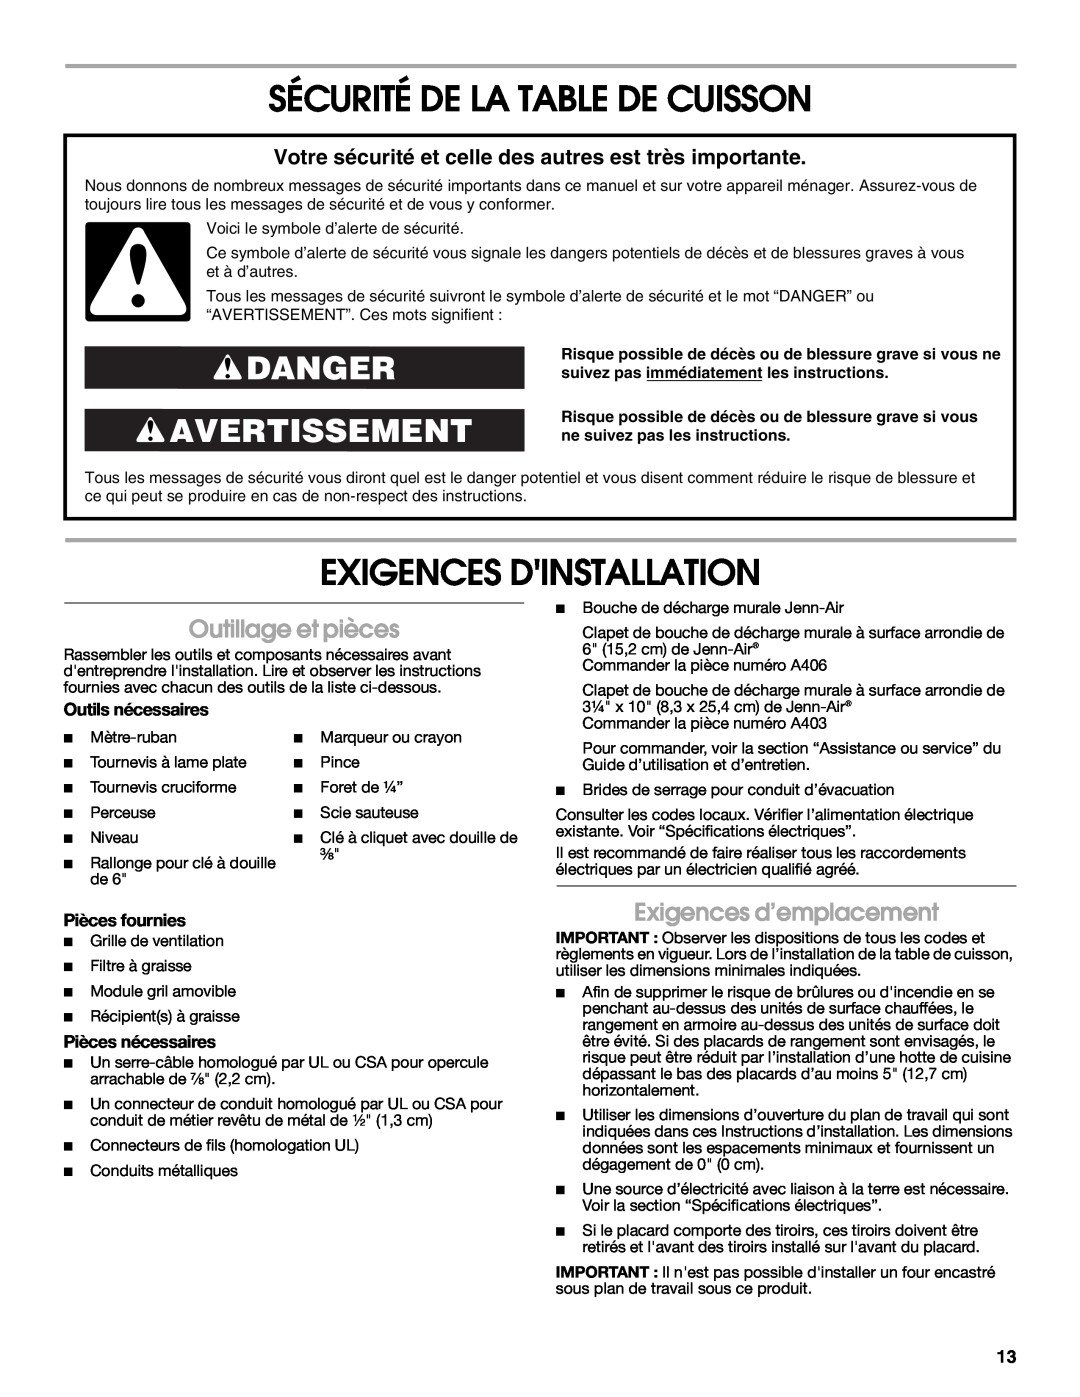 Jenn-Air W10298937A Sécurité De La Table De Cuisson, Exigences Dinstallation, Danger Avertissement, Outillage et pièces 